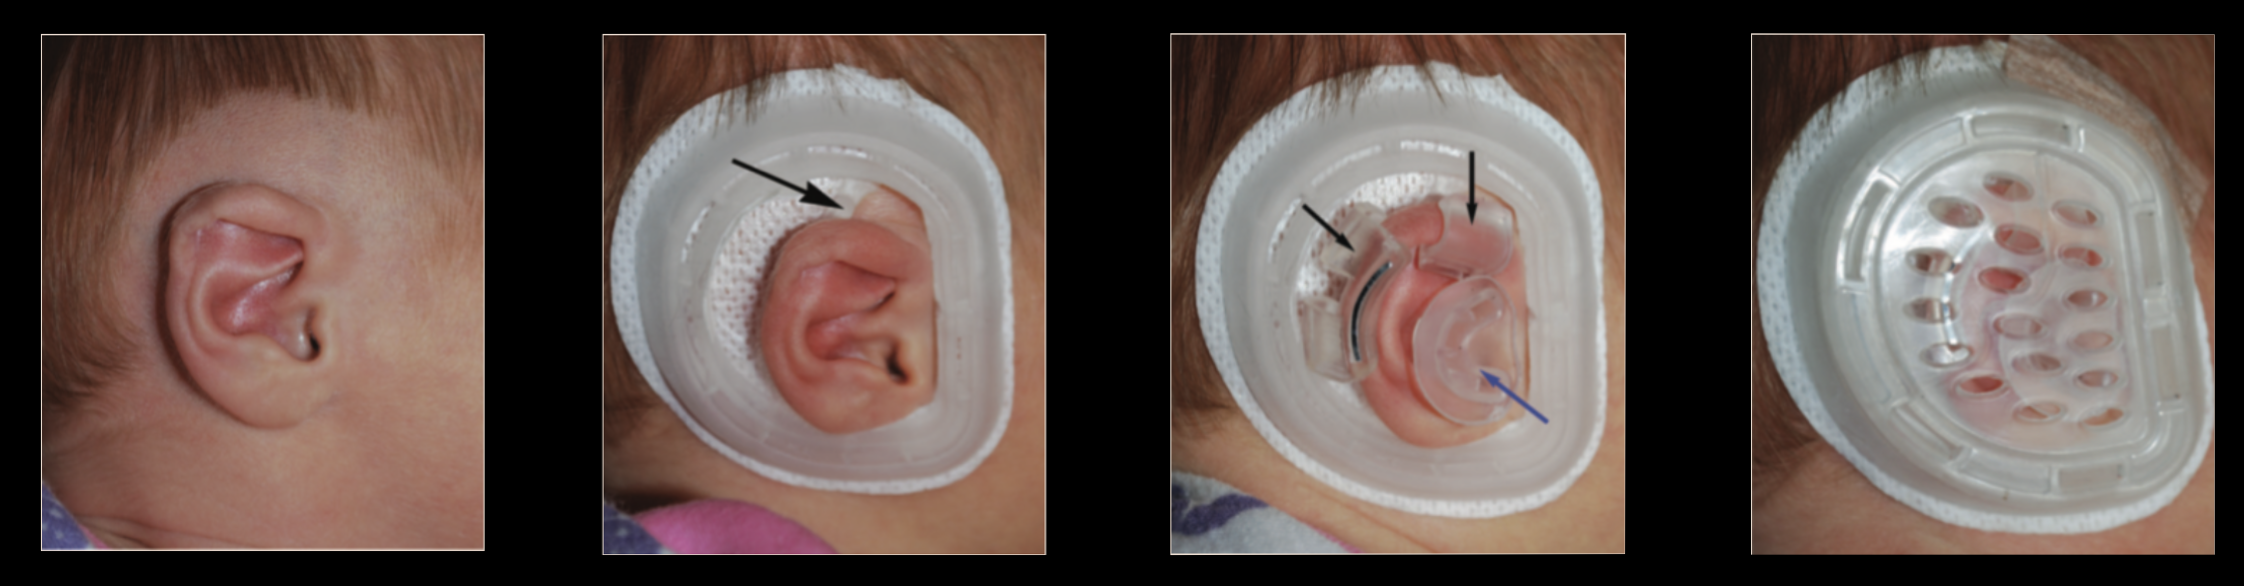 Dispositif Earwell pour la correction non chirurgicale des malformations de l'oreille chez les bébés